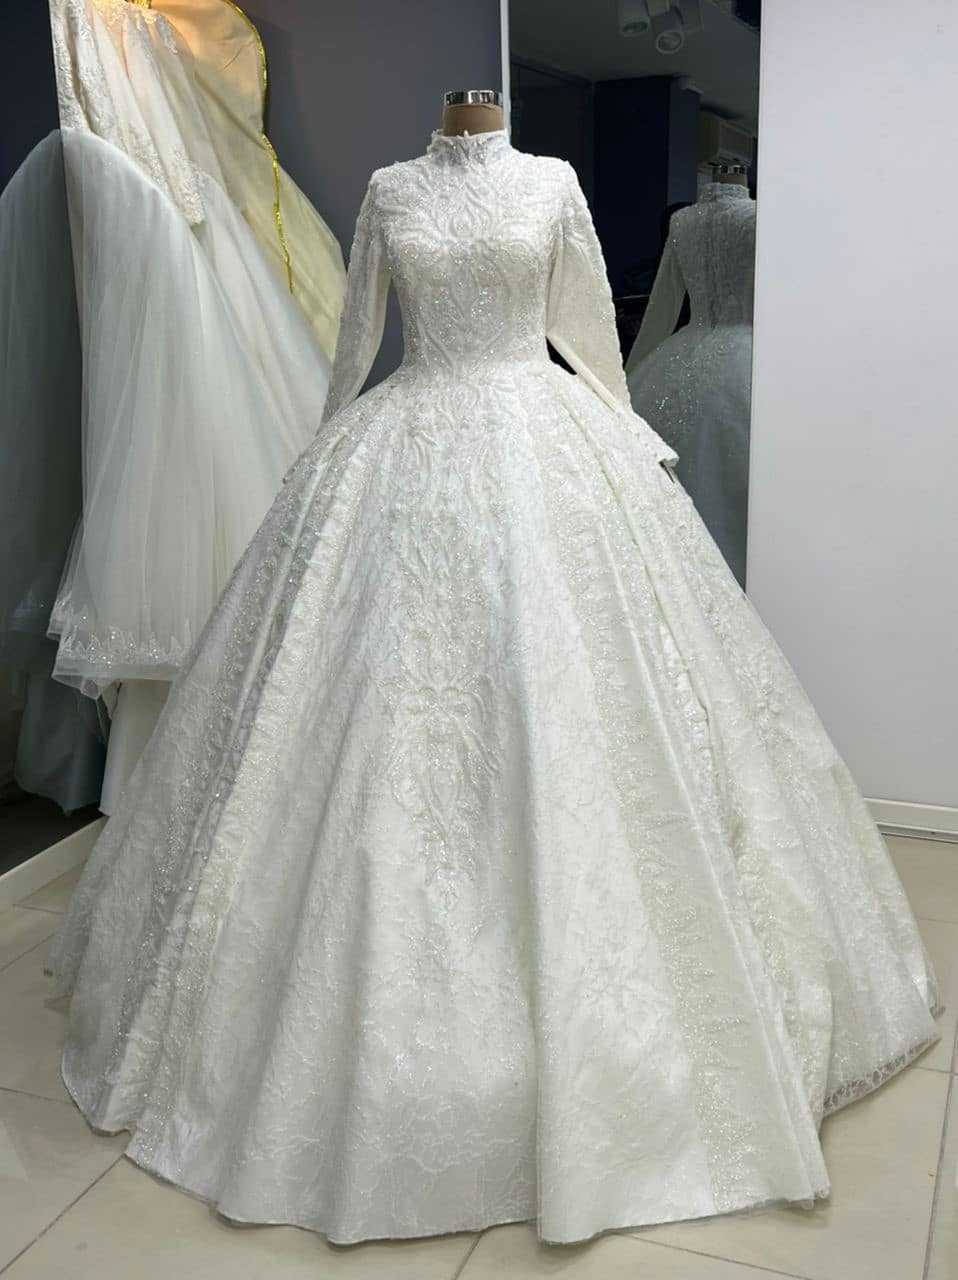  لباس عروس ۲۰۲۱ ایرانی لباس عروس ۱۴۰۰ اینستا لباس عروس اروپایی